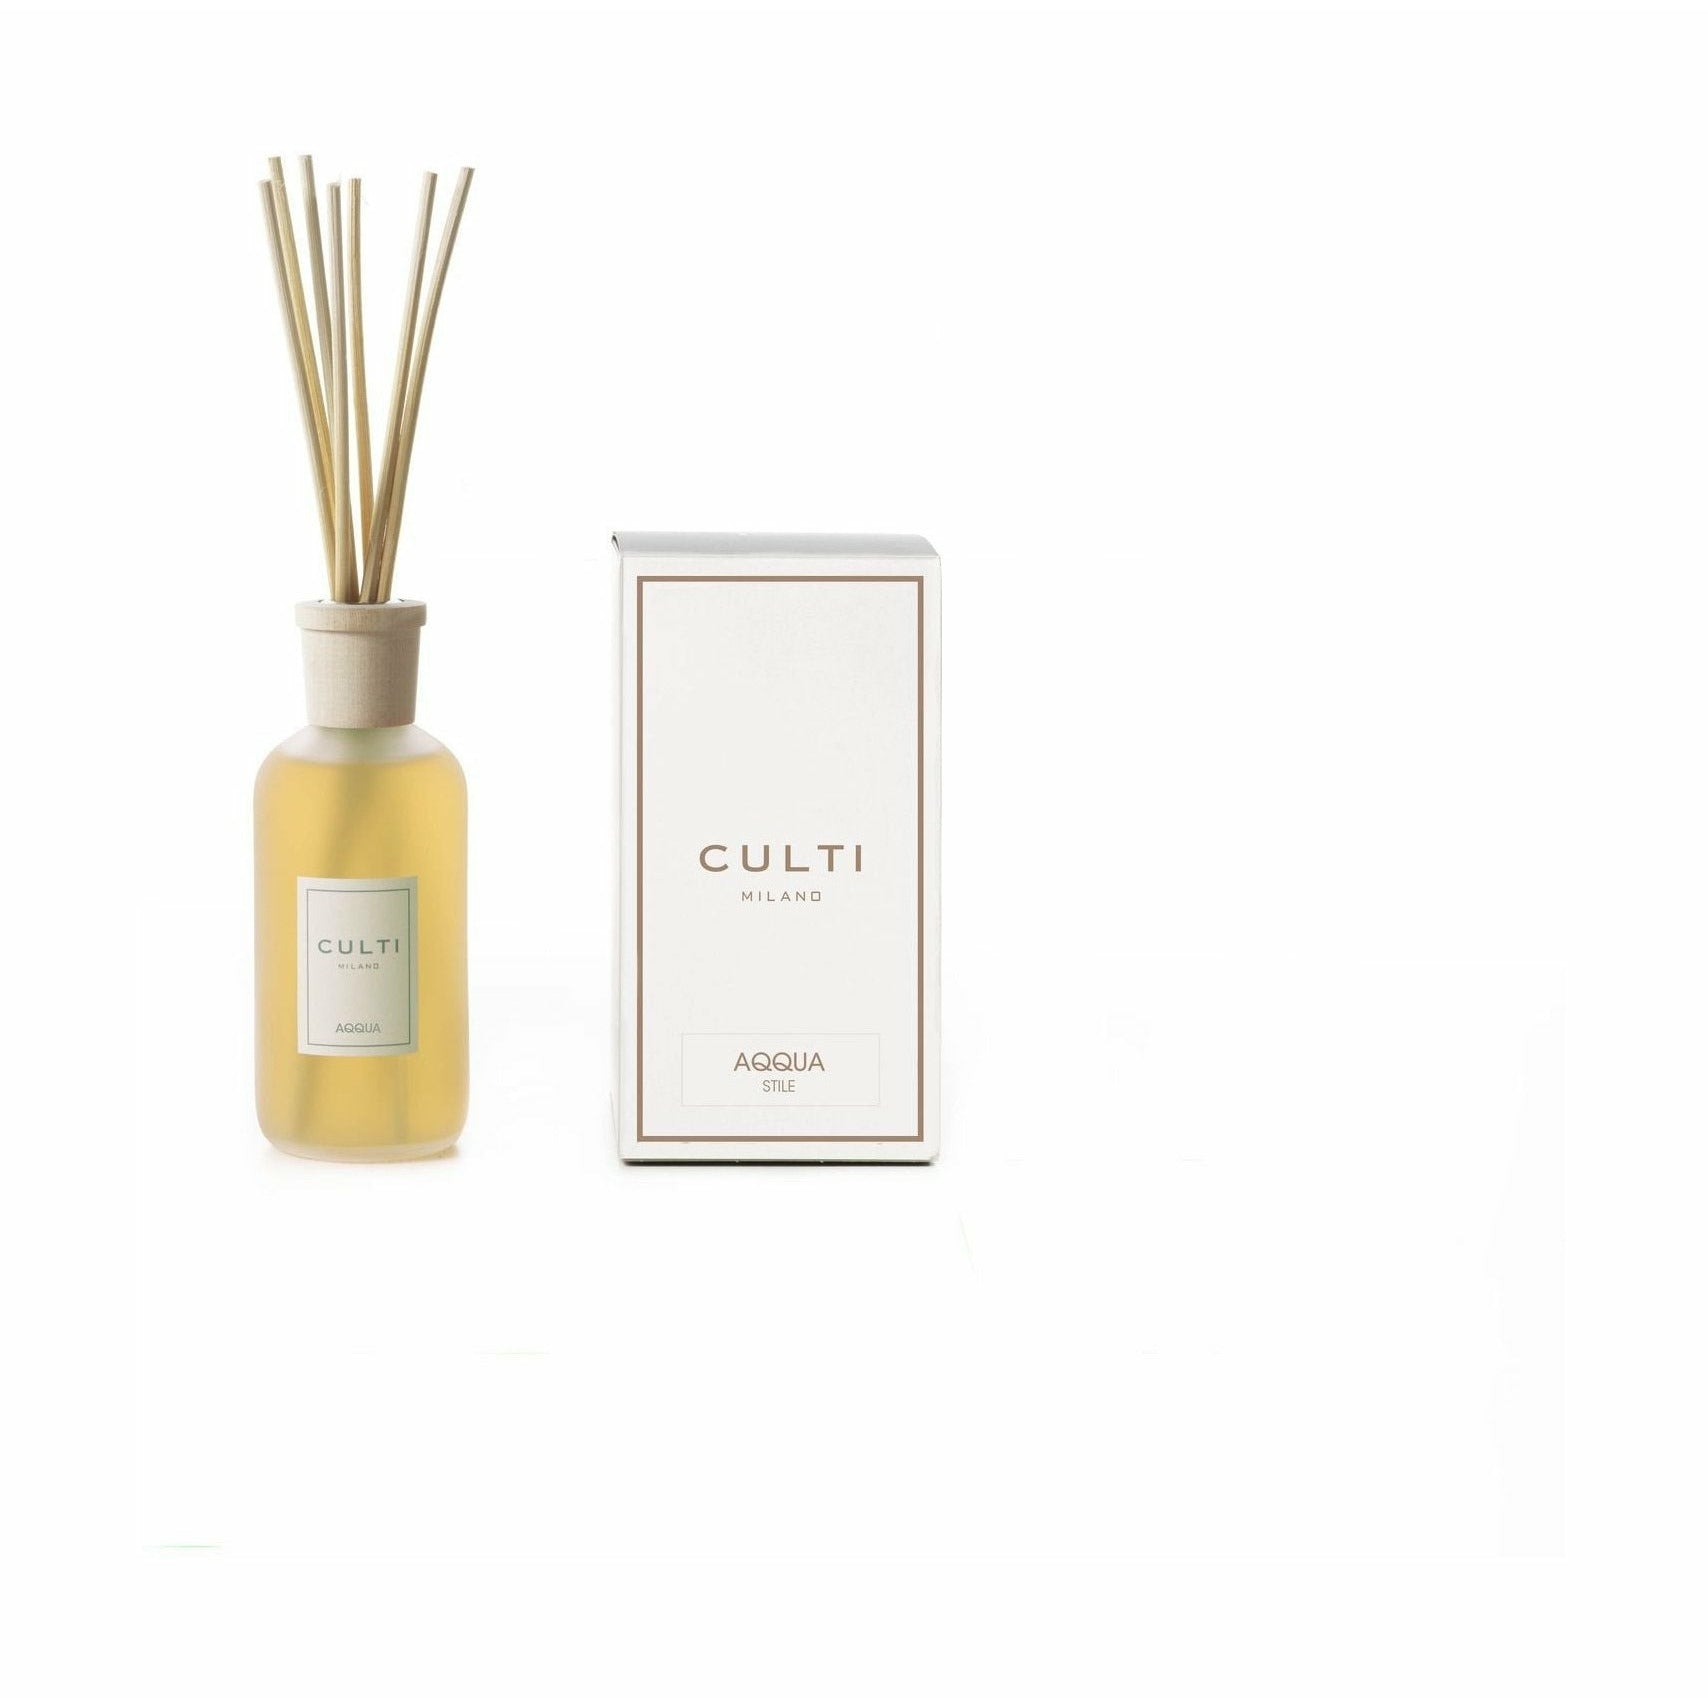 COLTI MILANO Stile Classic Fragrance Diffuser Aqqua, 250 ml